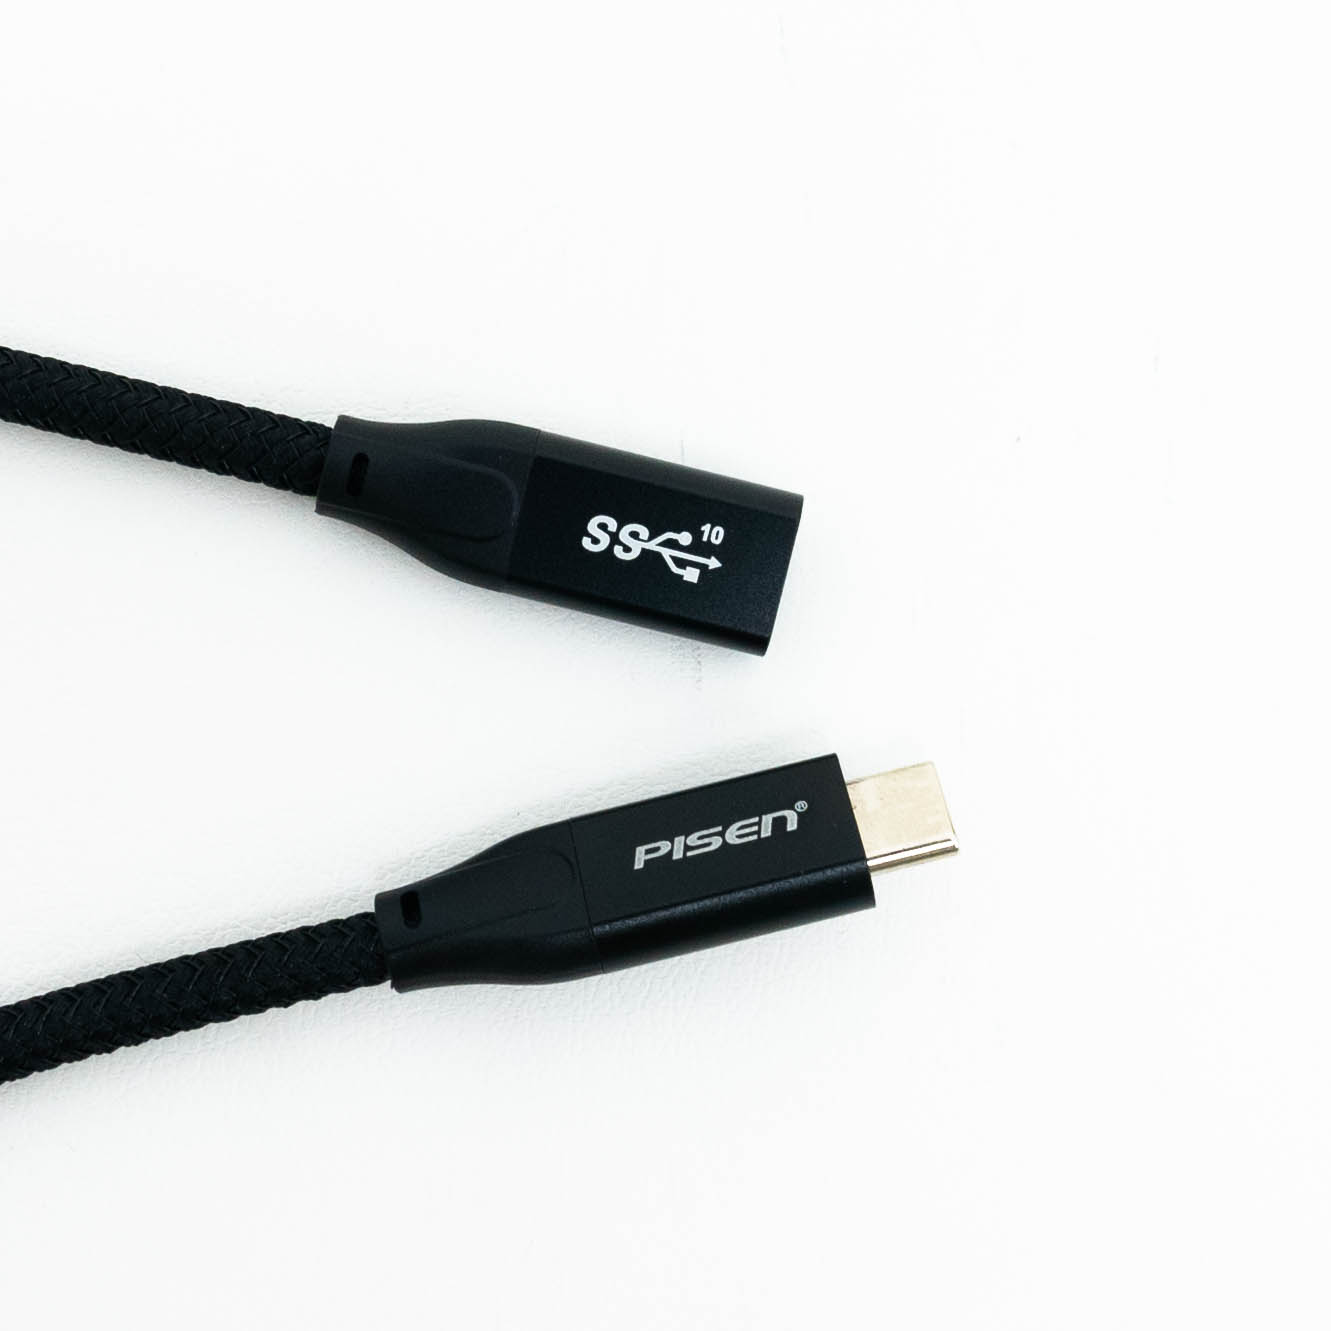 「初発売」 Pisen HDMI バージョン 2.0 編組高精細亜鉛合金ケーブル|undefined